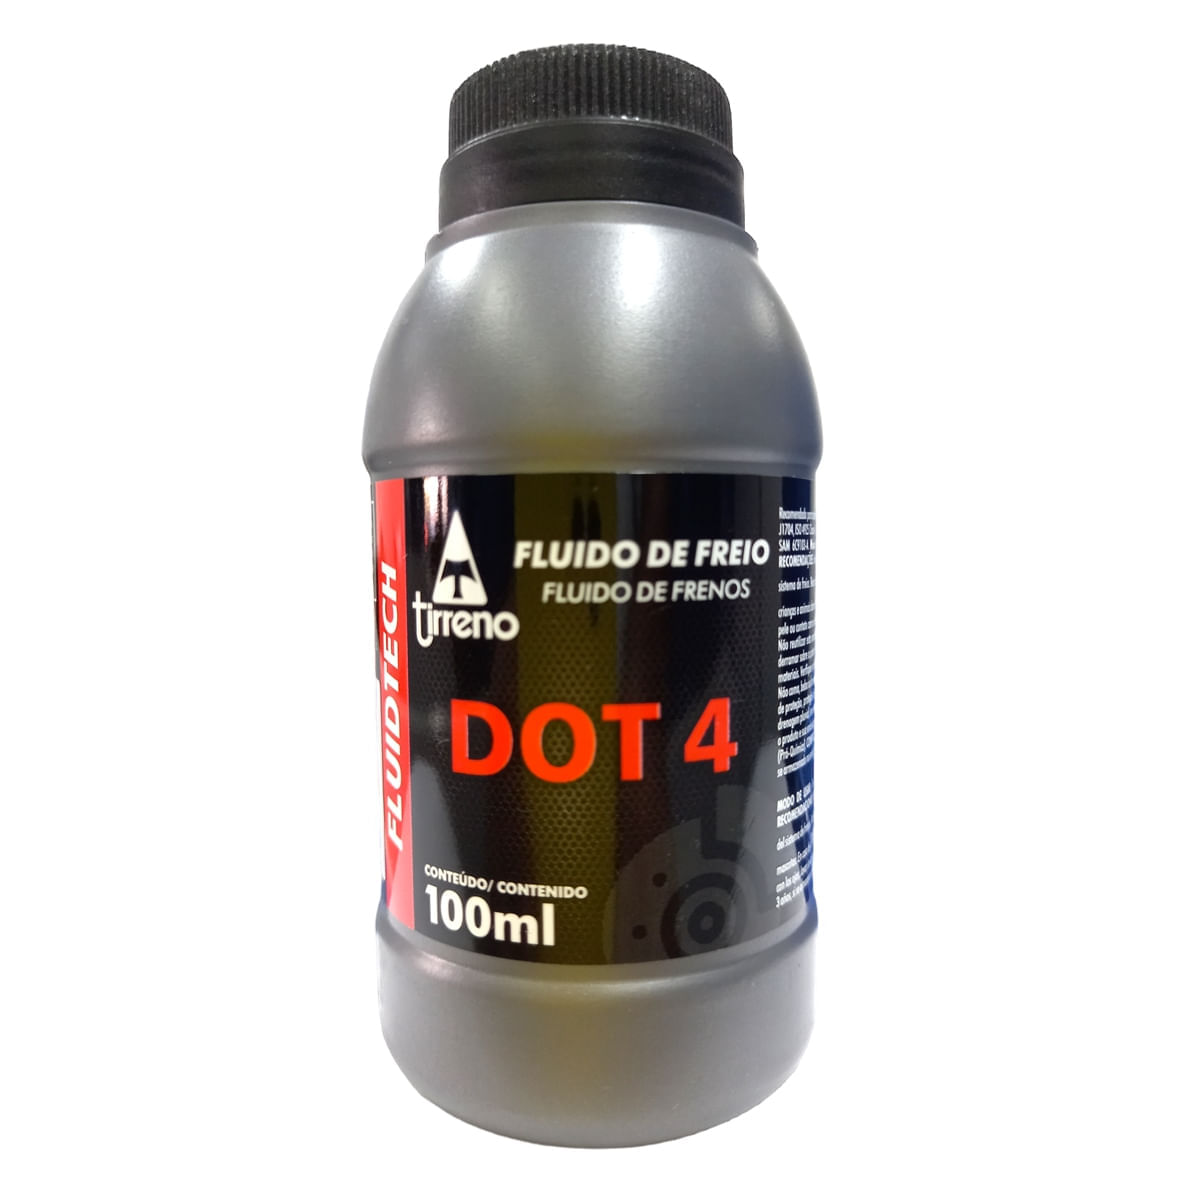 Fluído de Freio Fluidtech Dot 4  100ml - Tirreno Fluído de Freio Fluidtech Dot 4 100ml - Tirreno